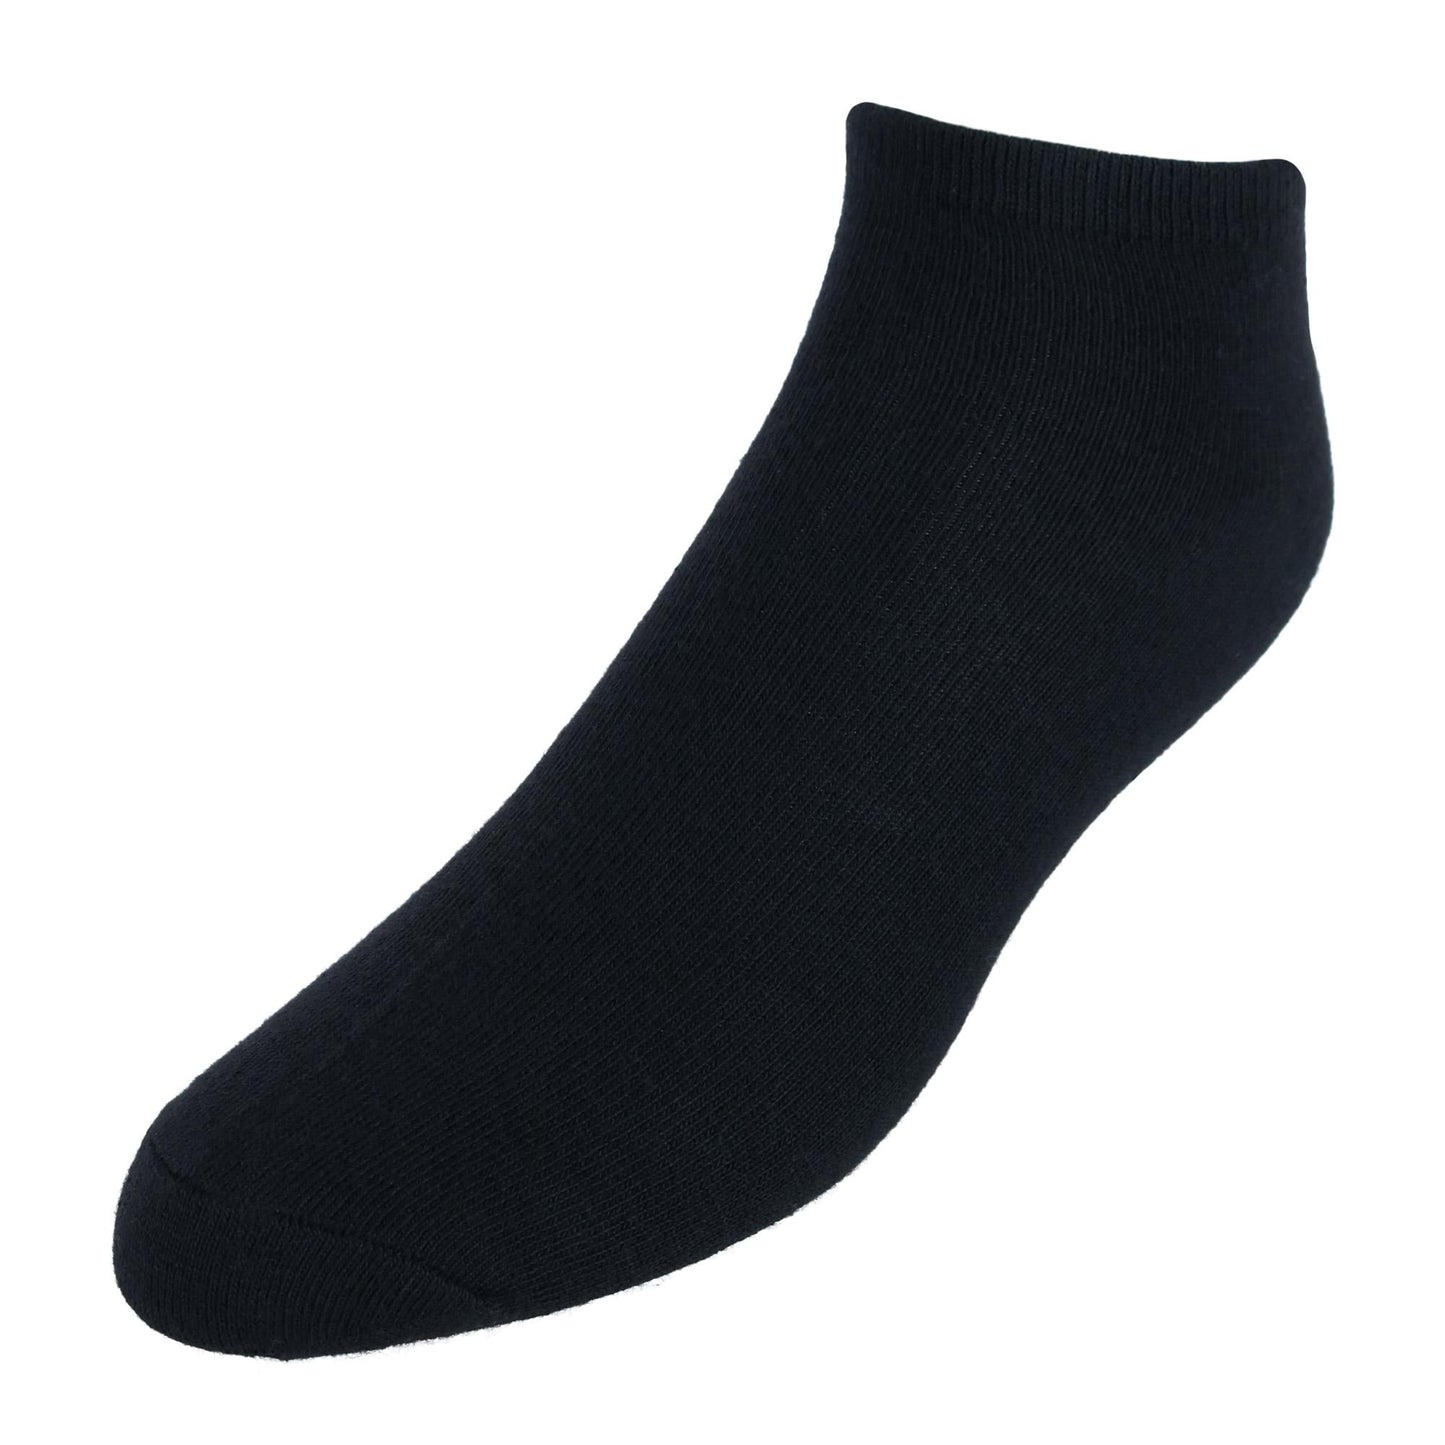 CTM® Men's Quarter Cut Athletic Comfort Socks (5 Pairs)